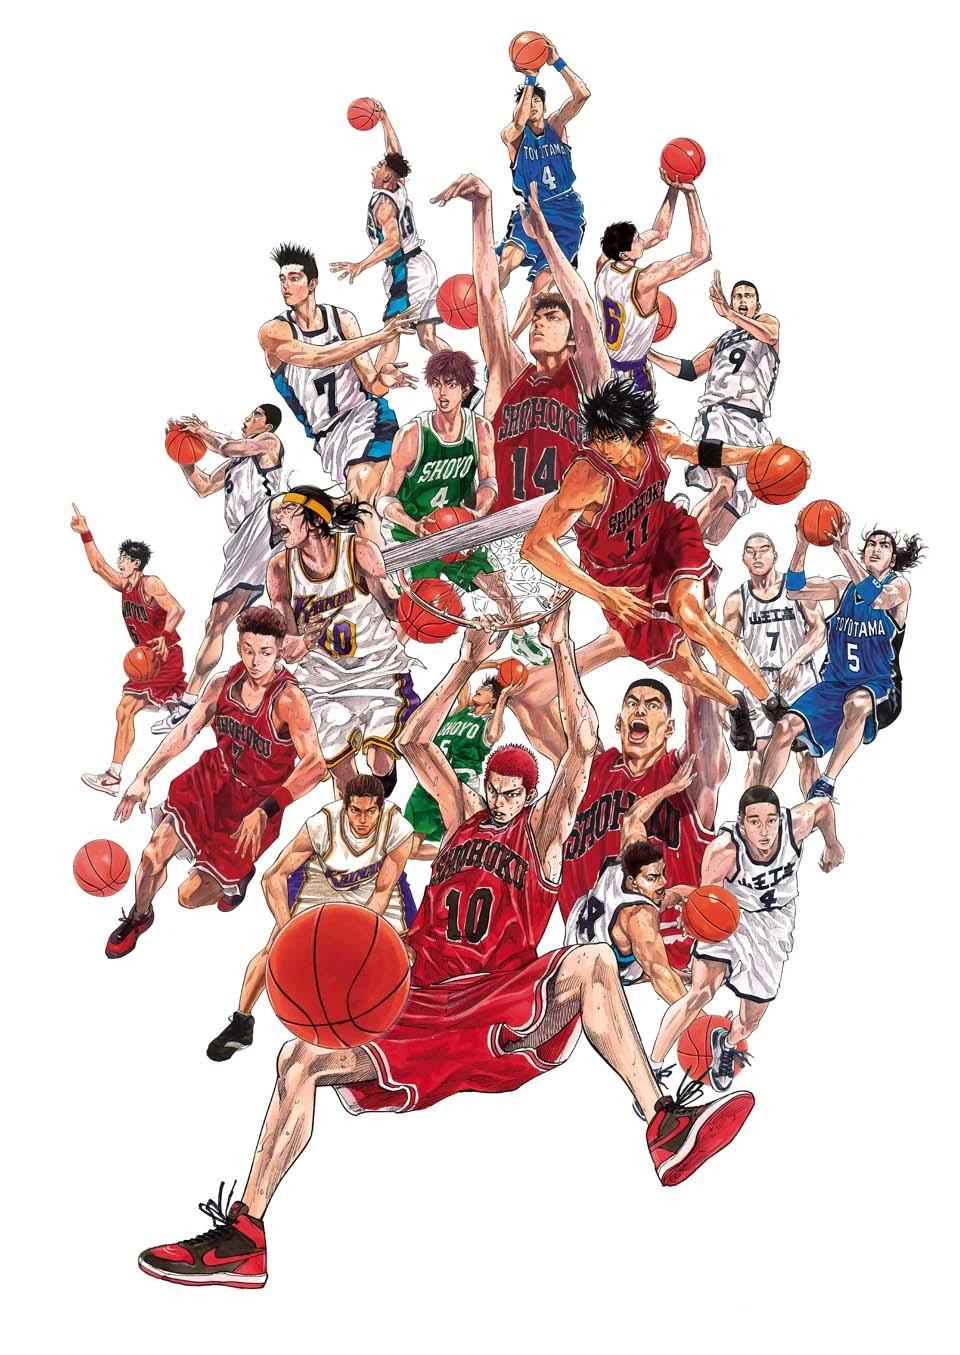 《灌篮高手》是日本漫画家井上雄彦以高中篮球为题材的少年漫画,在